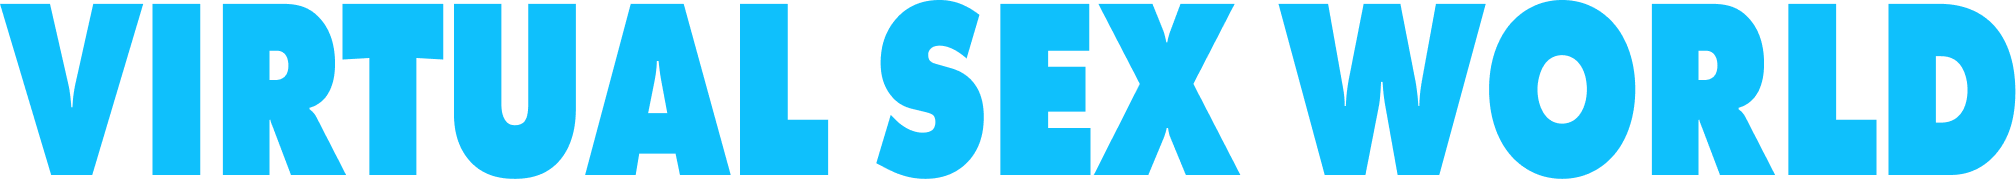 VSW logo